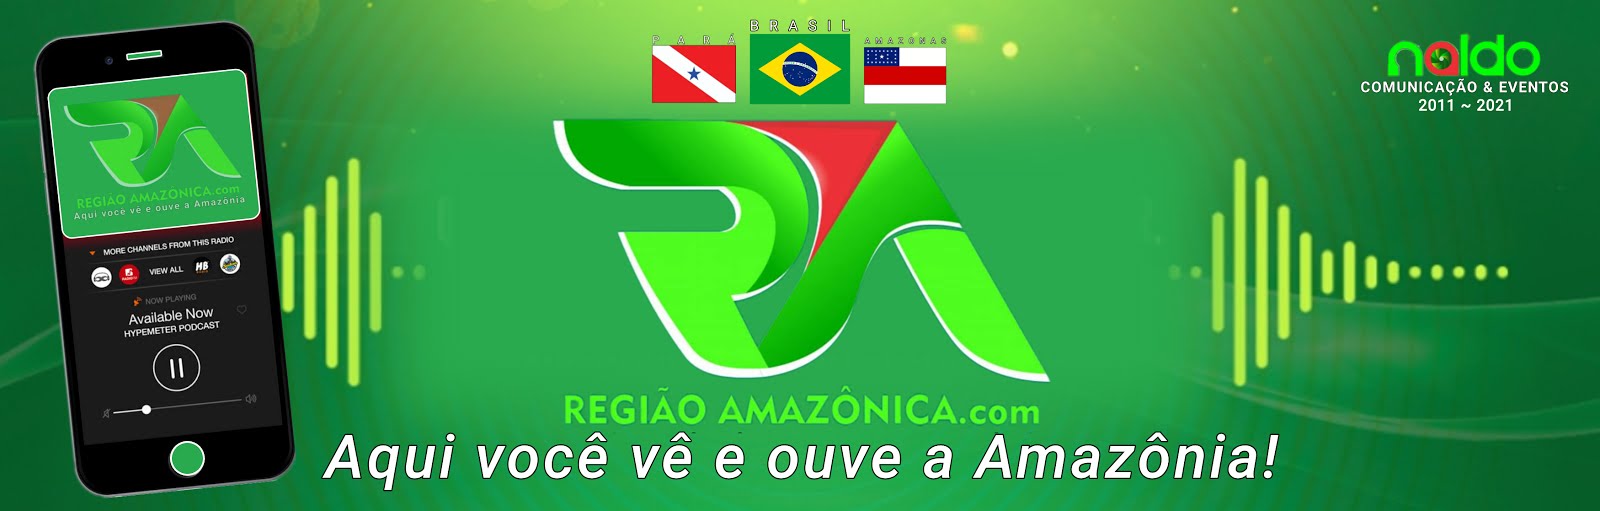 Portal Região Amazônica